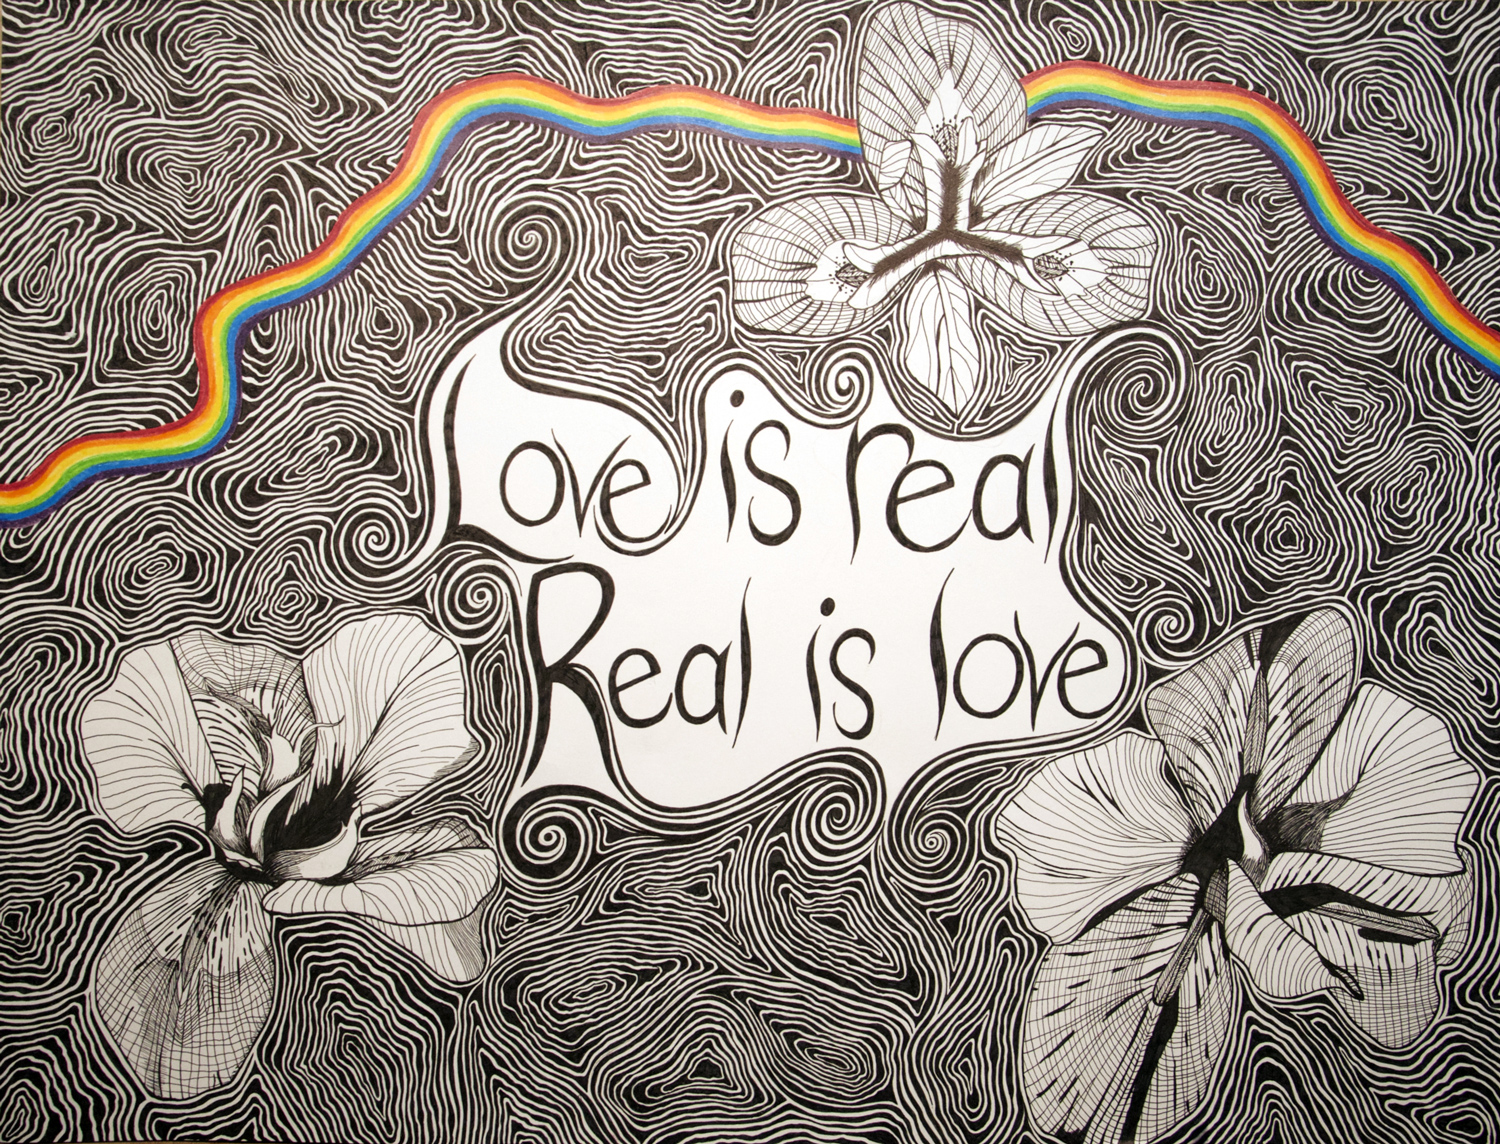 Love Is Real Flower drawing, by Tara Marolf